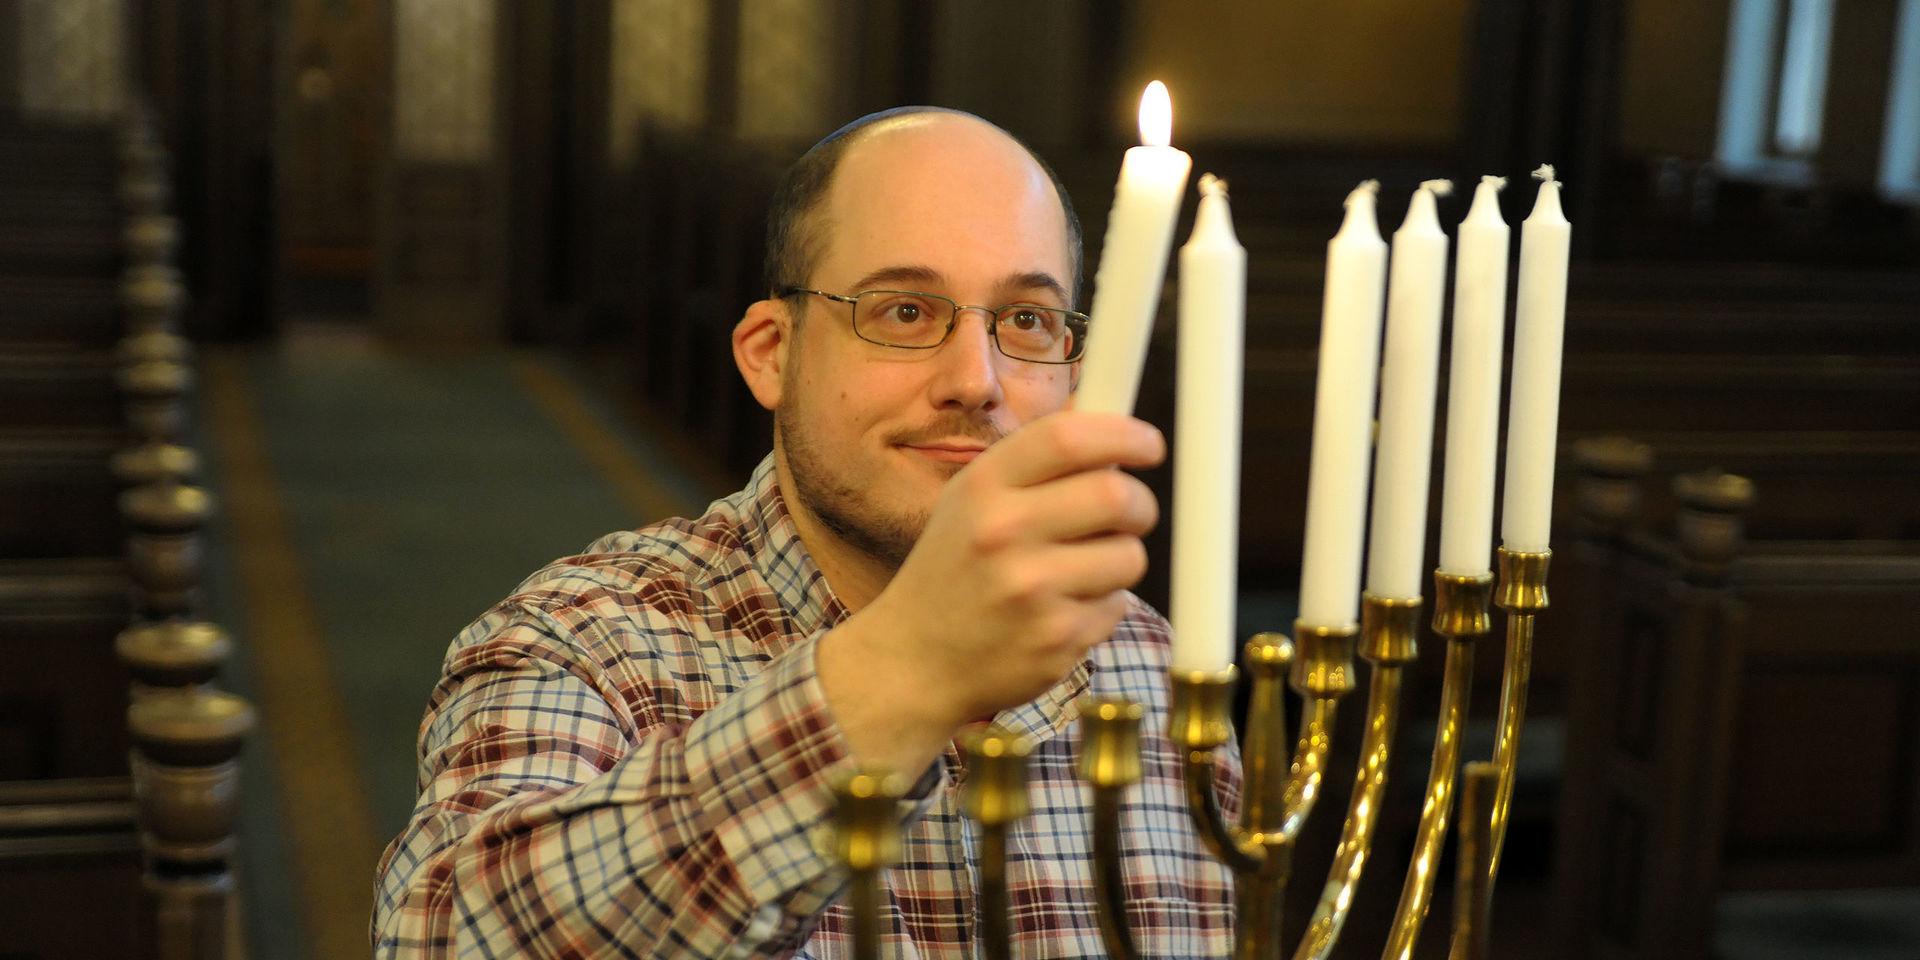 Av religiösa skäl firar inte Benjamin Gerber jul på traditionellt sätt. Den åtta dagar långa judiska ljusfesten Chanukka är däremot en självklarhet i hans liv varje år.